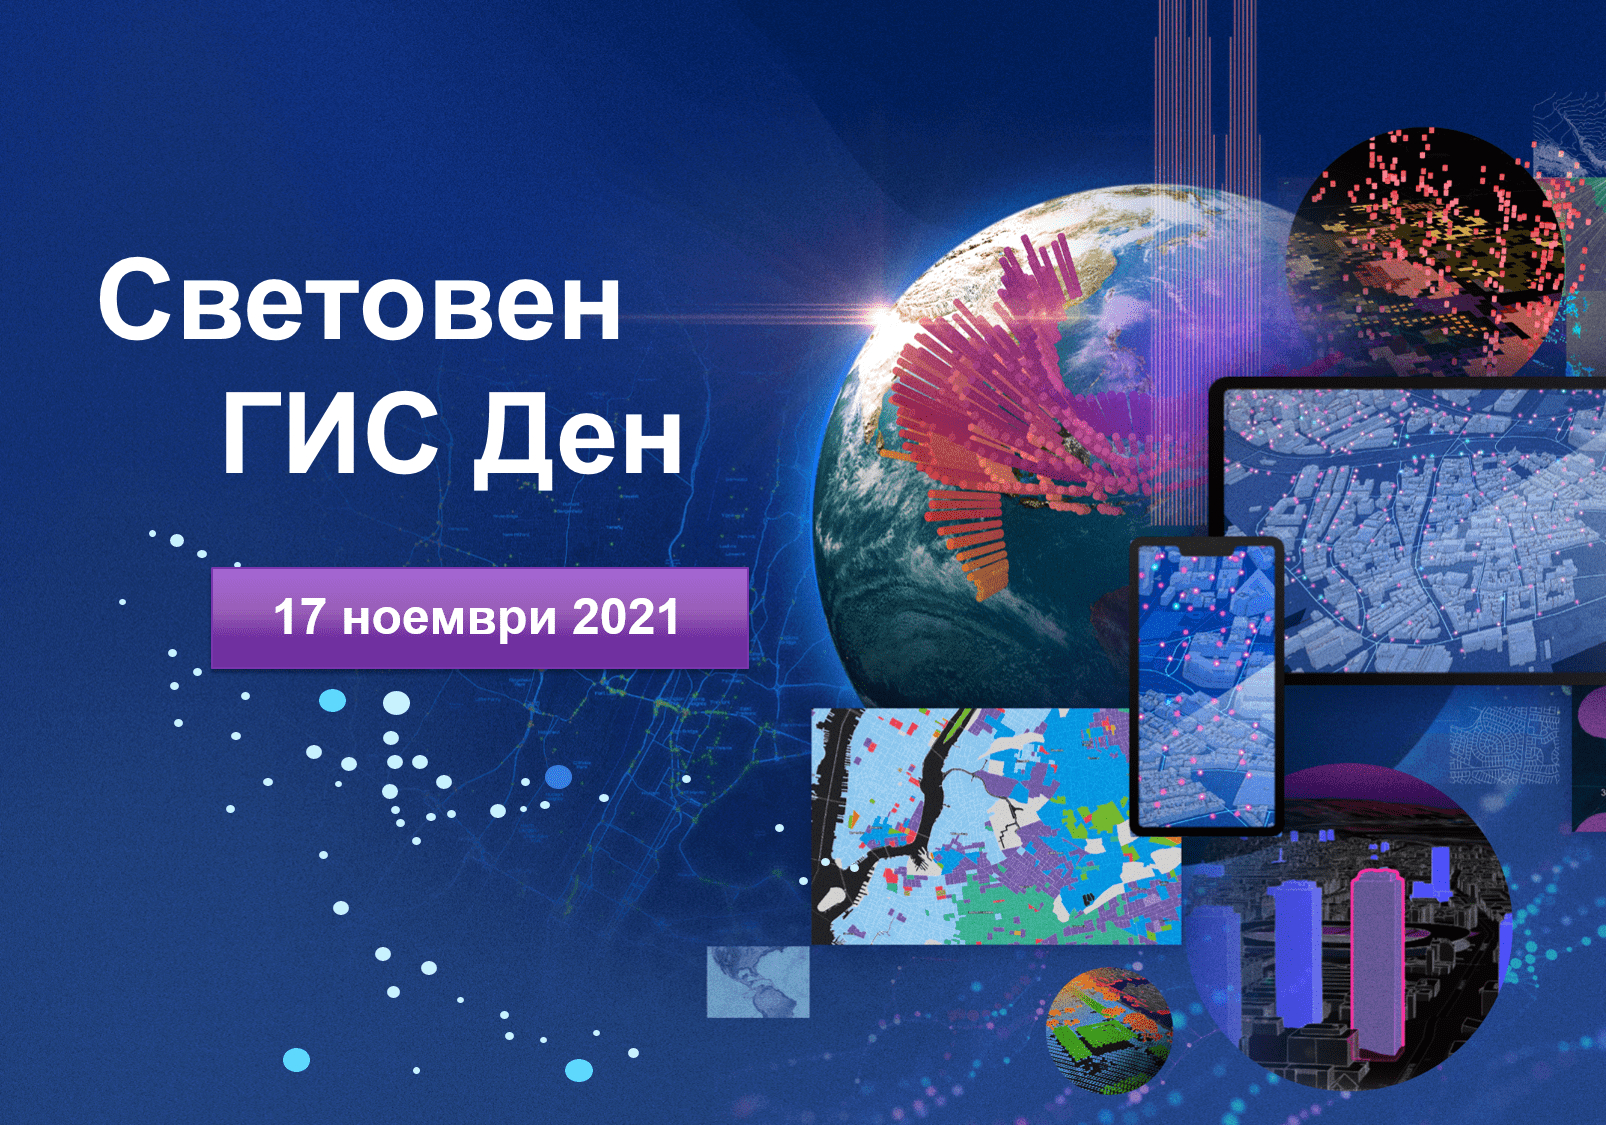 България отбелязва Световния ГИС ден с онлайн конференция на 17 ноември